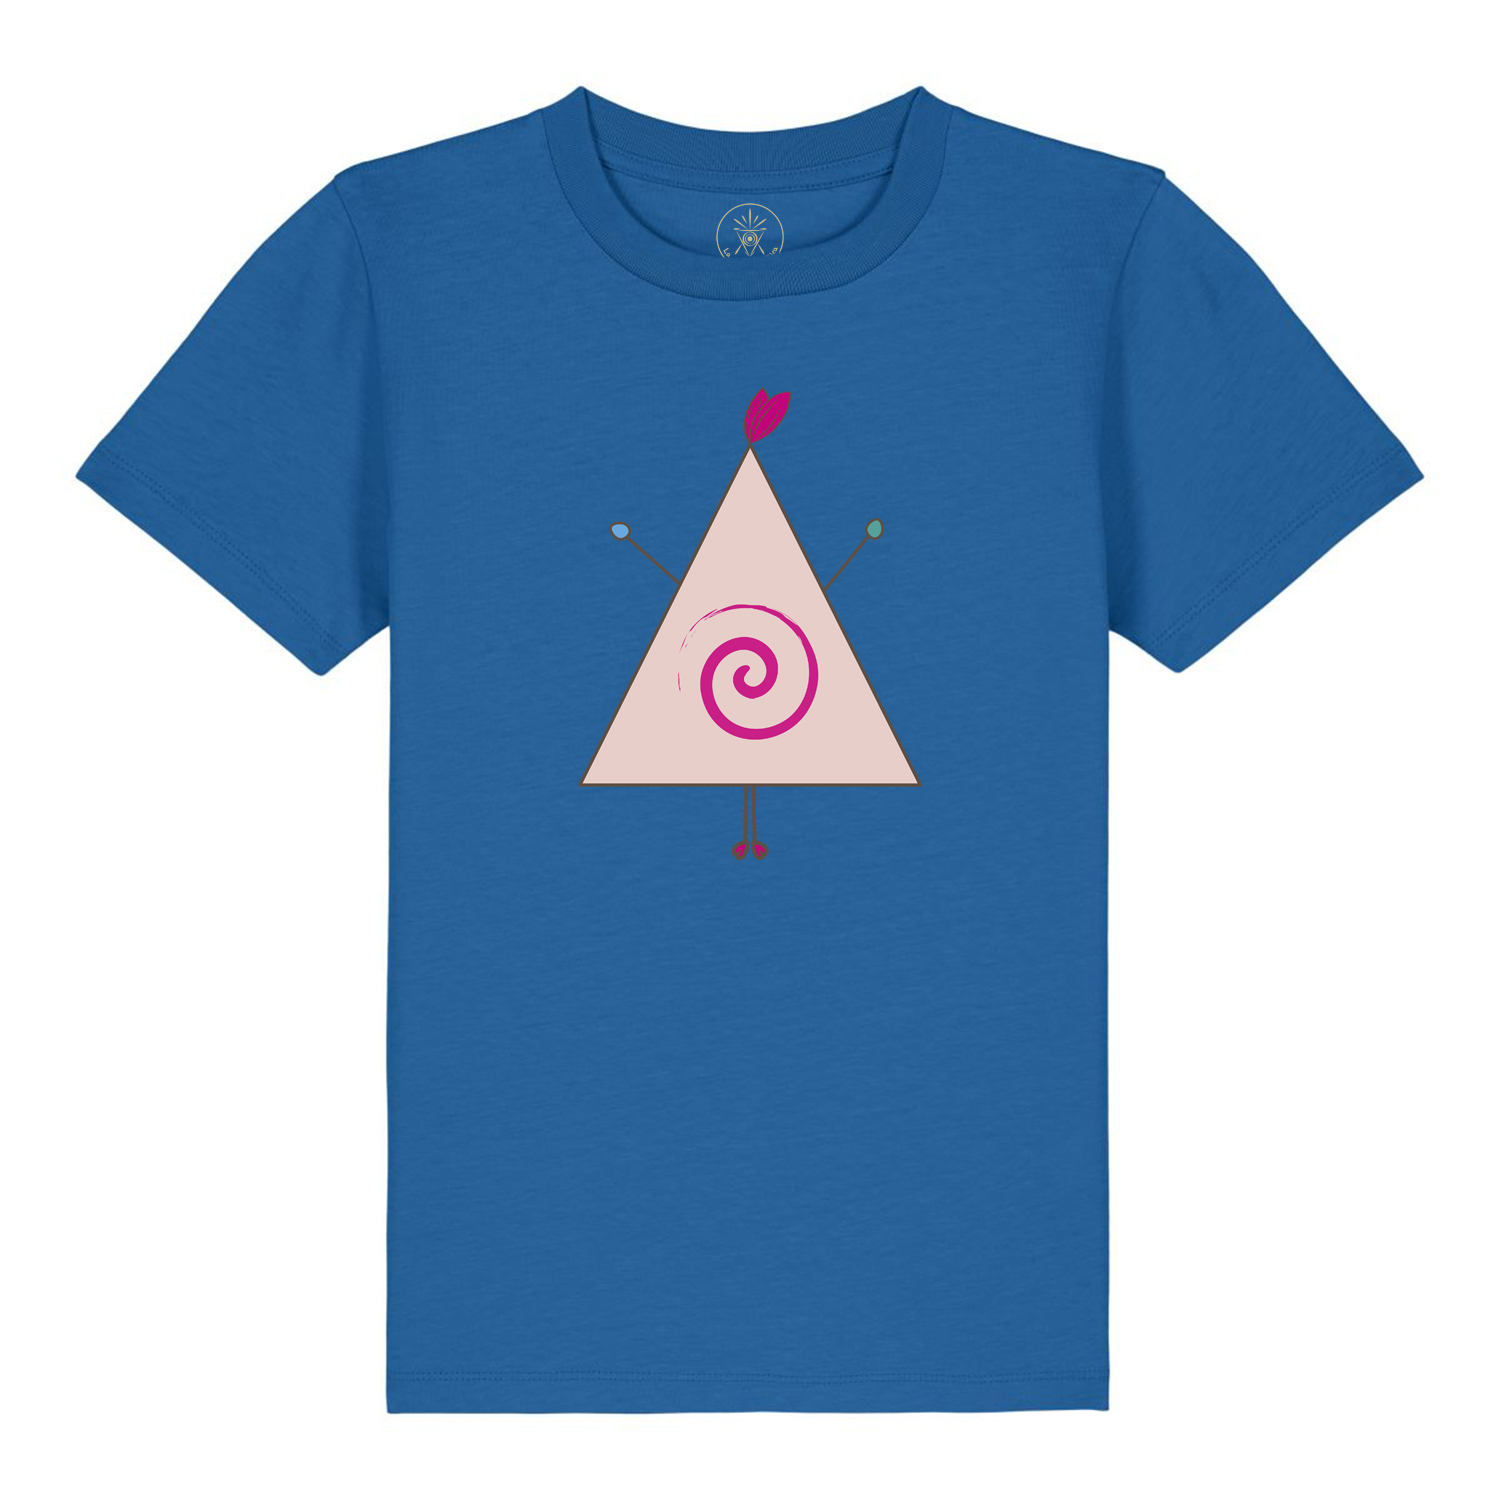 La Grulla Kika - Camisetas de niñ@